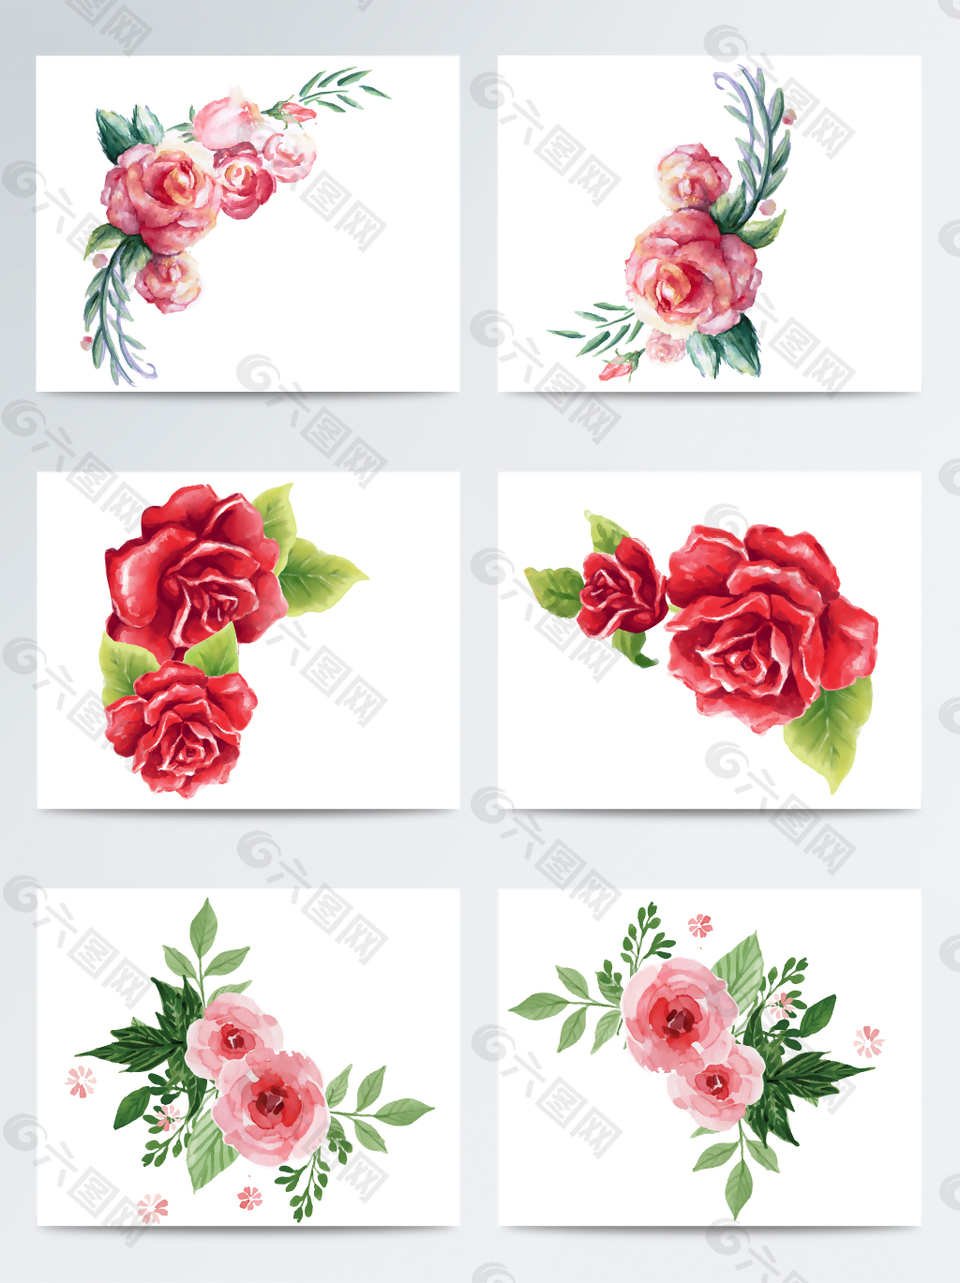 唯美手绘水彩蔷薇花素材设计元素素材免费下载 图片编号 9194538 六图网